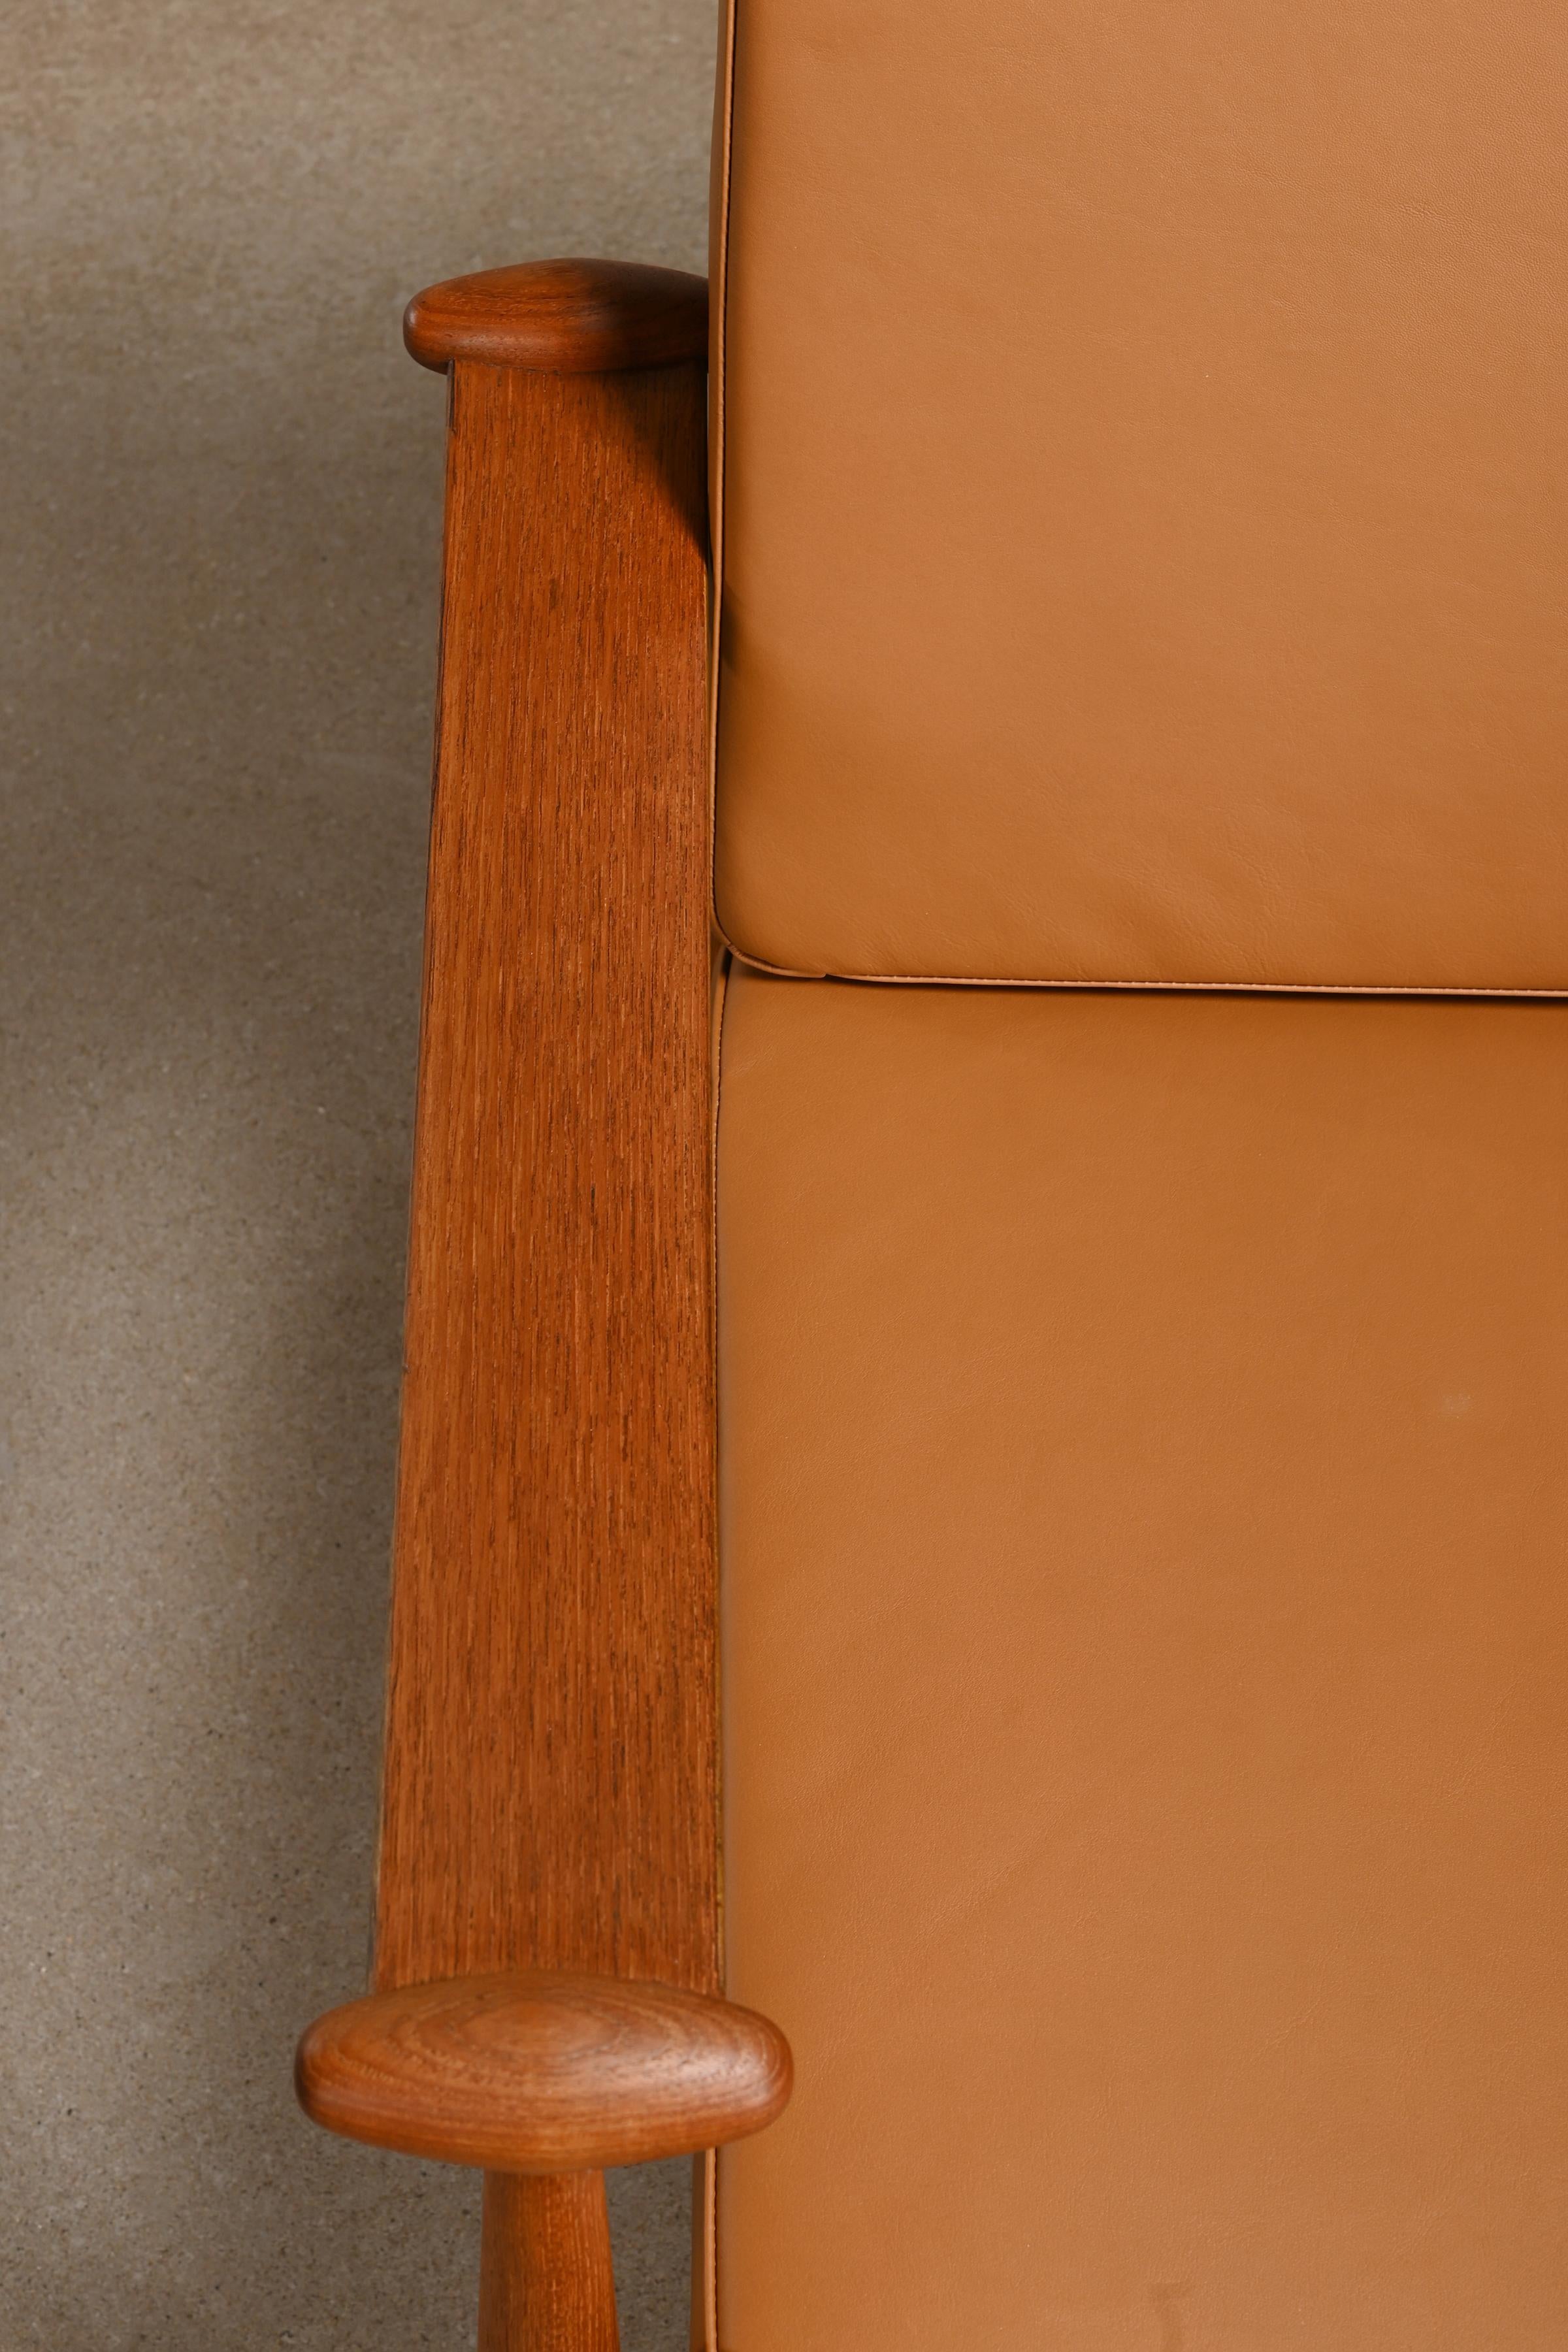 Finn Juhl FD-133 Easy Chair in Teak and Cognac Leather for France & Daverkosen For Sale 4